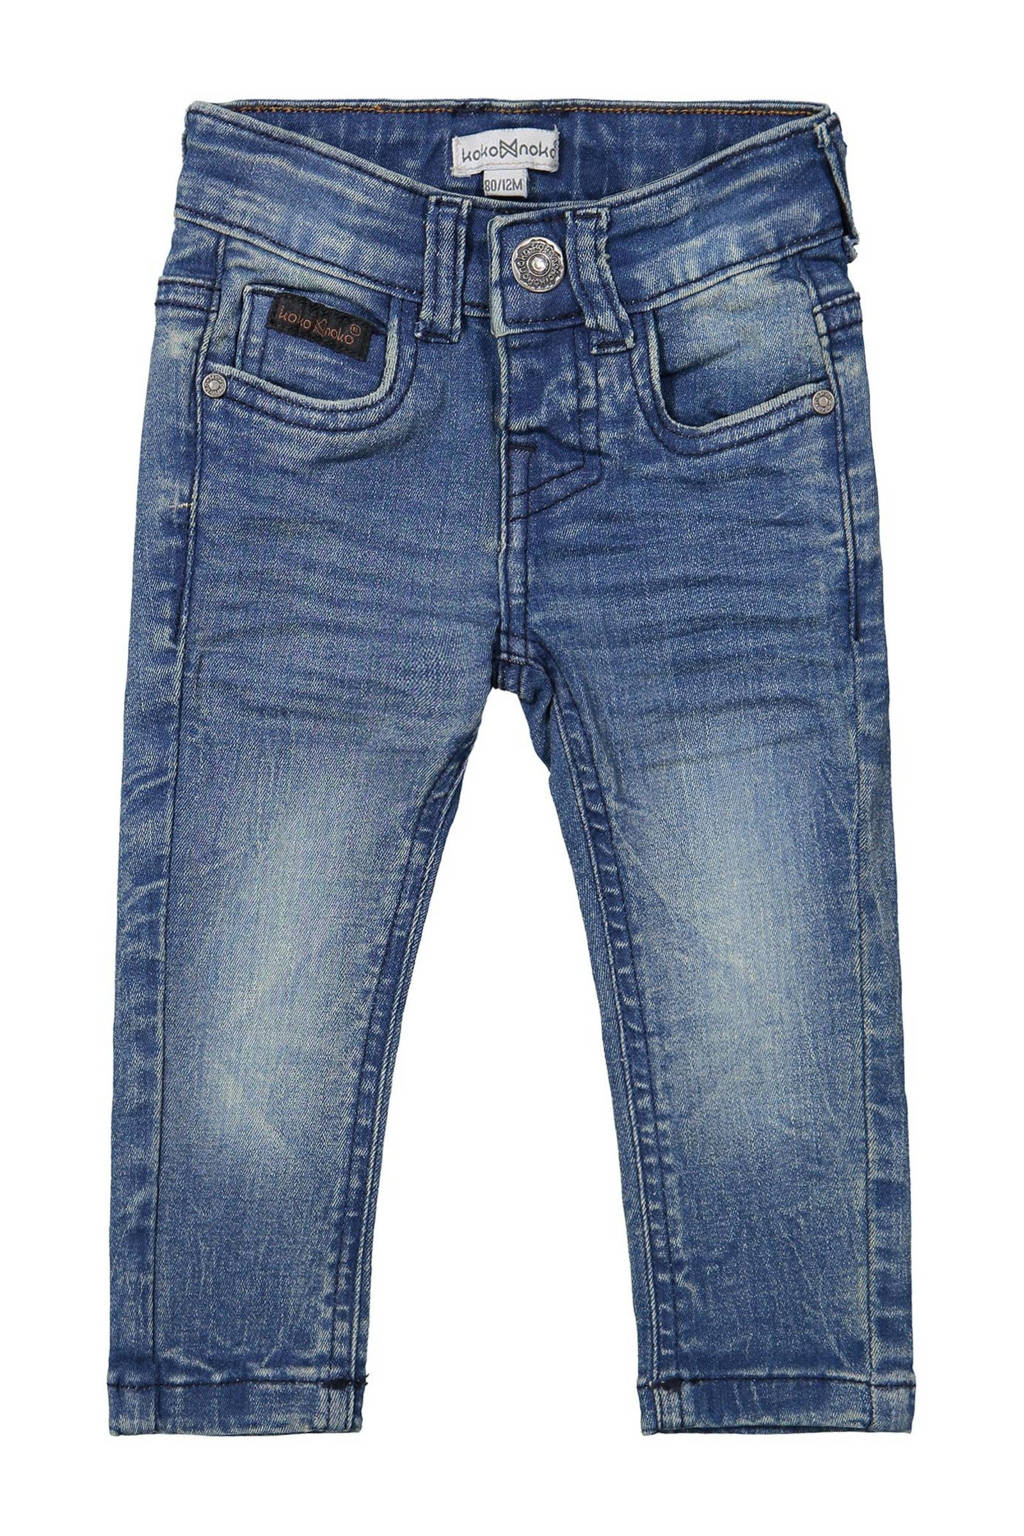 Koko Noko slim fit jeans stonewashed